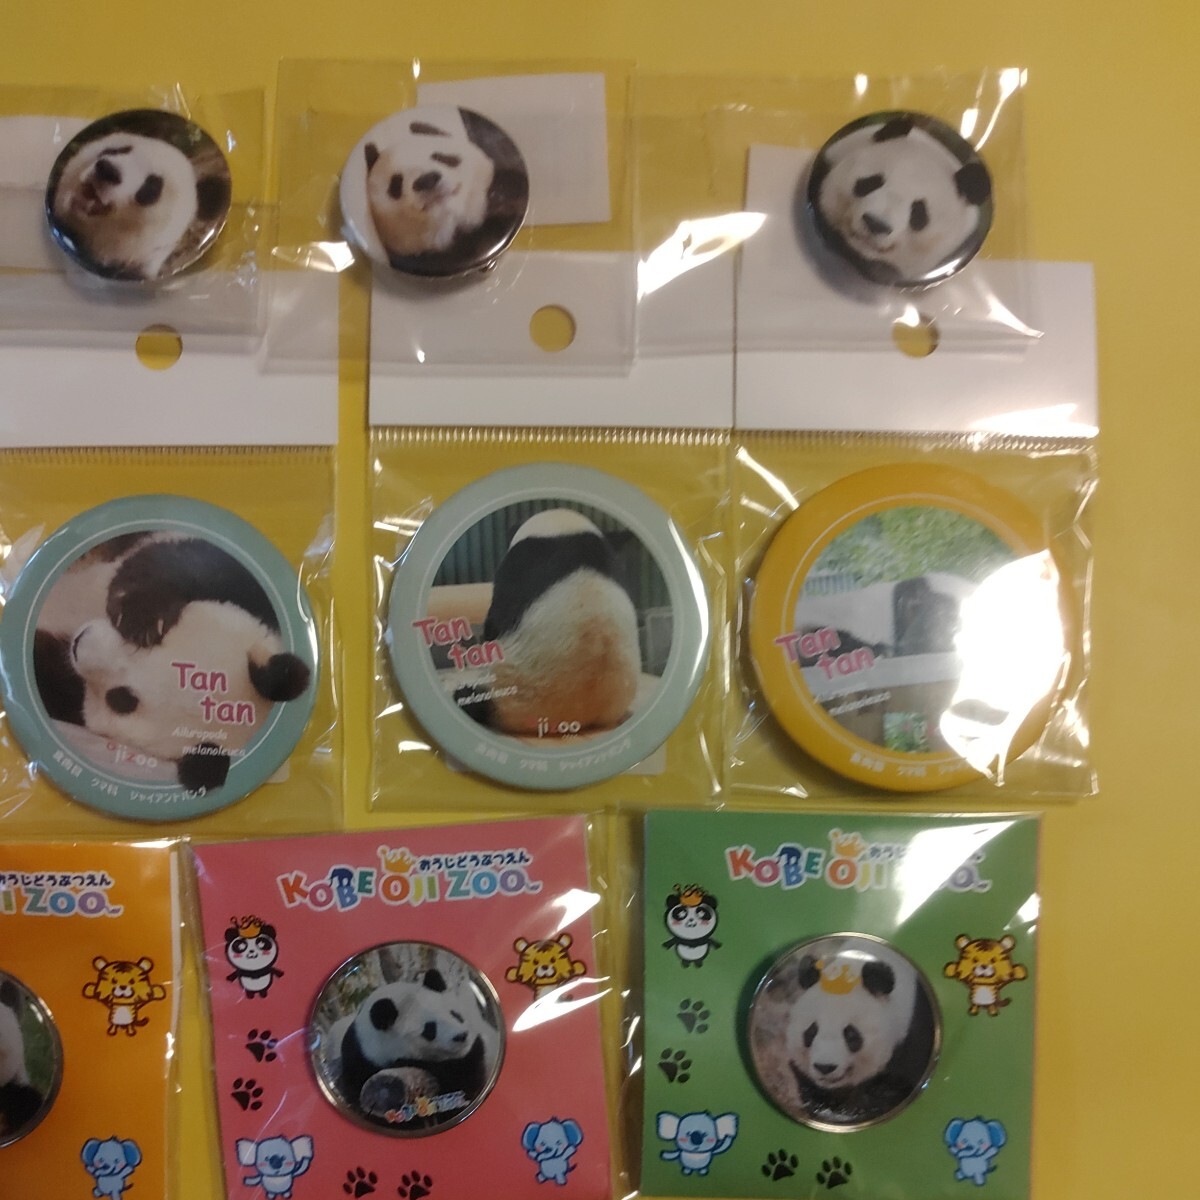 タンタン 王子動物園 缶バッジ ピンバッジ セット パンダ Panda ジャイアントパンダ シャンシャン シャオシャオ レイレイの画像6